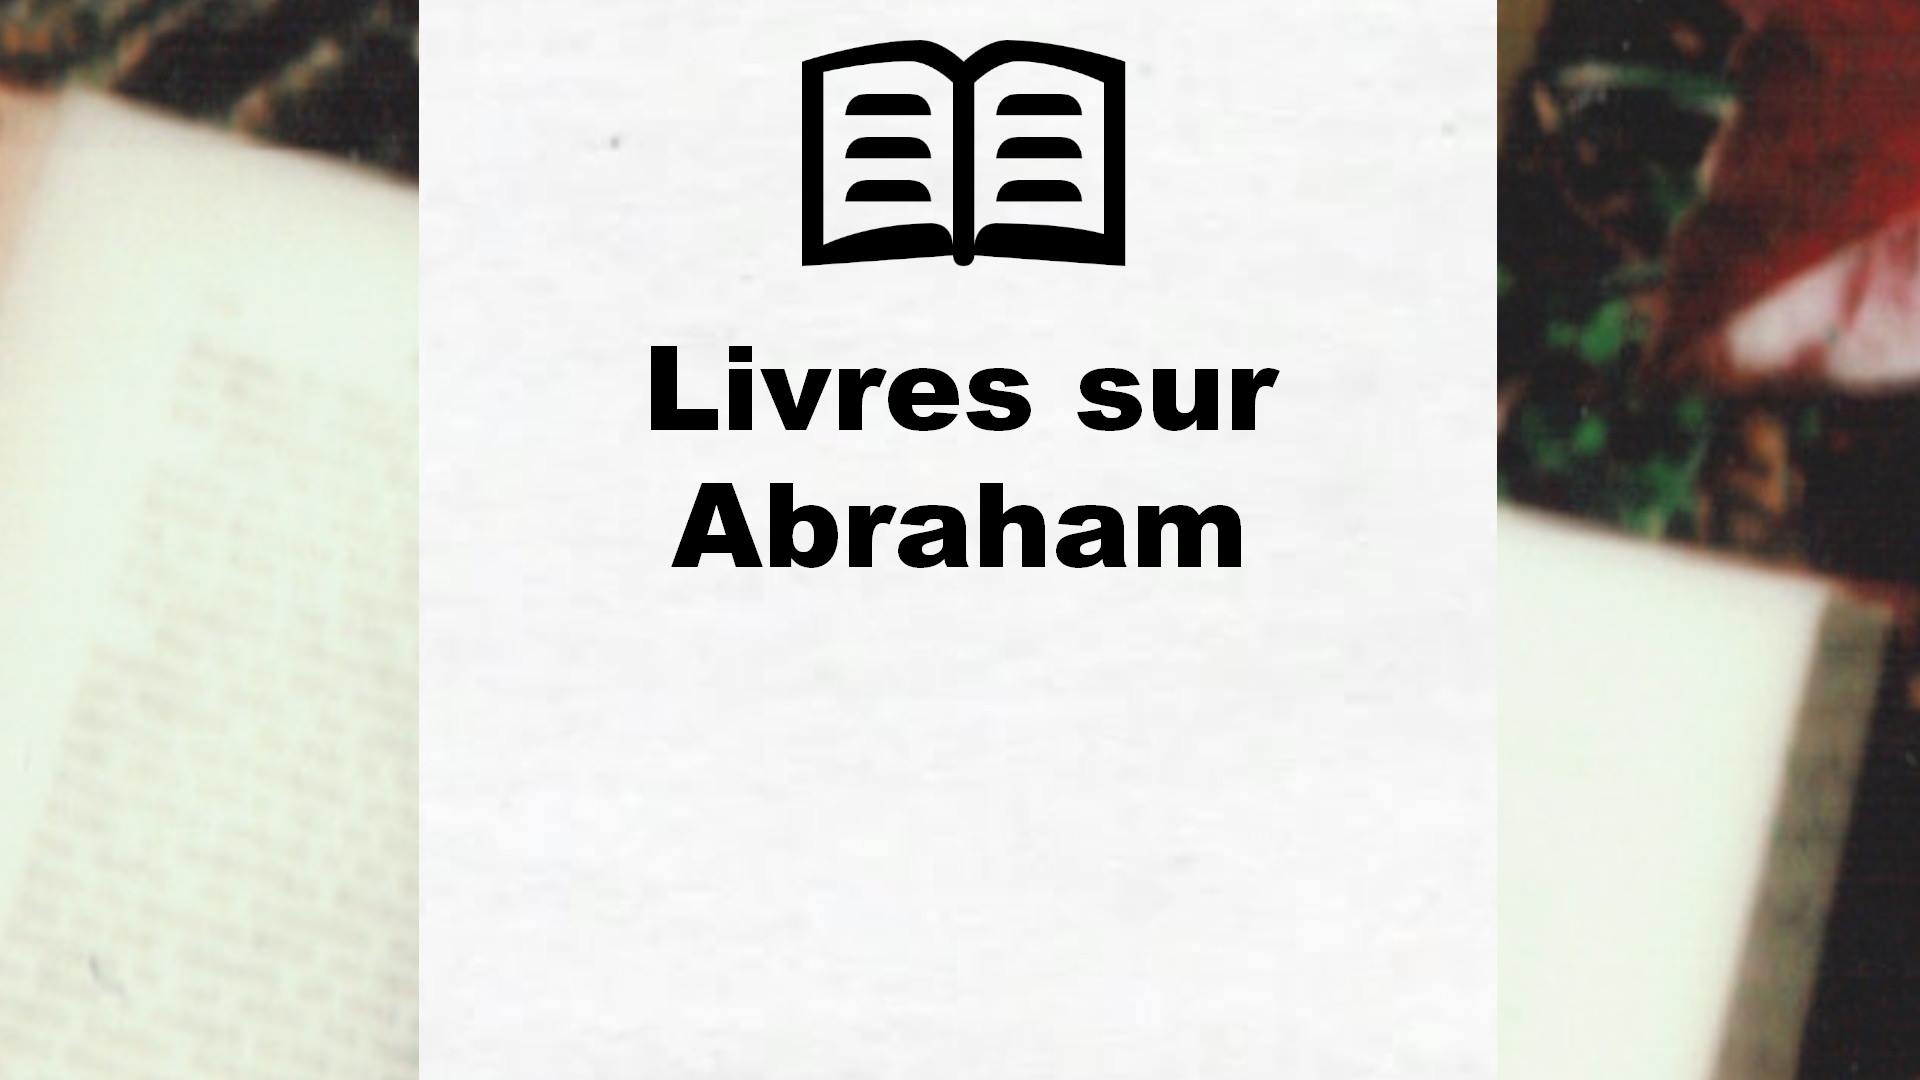 Livres sur Abraham